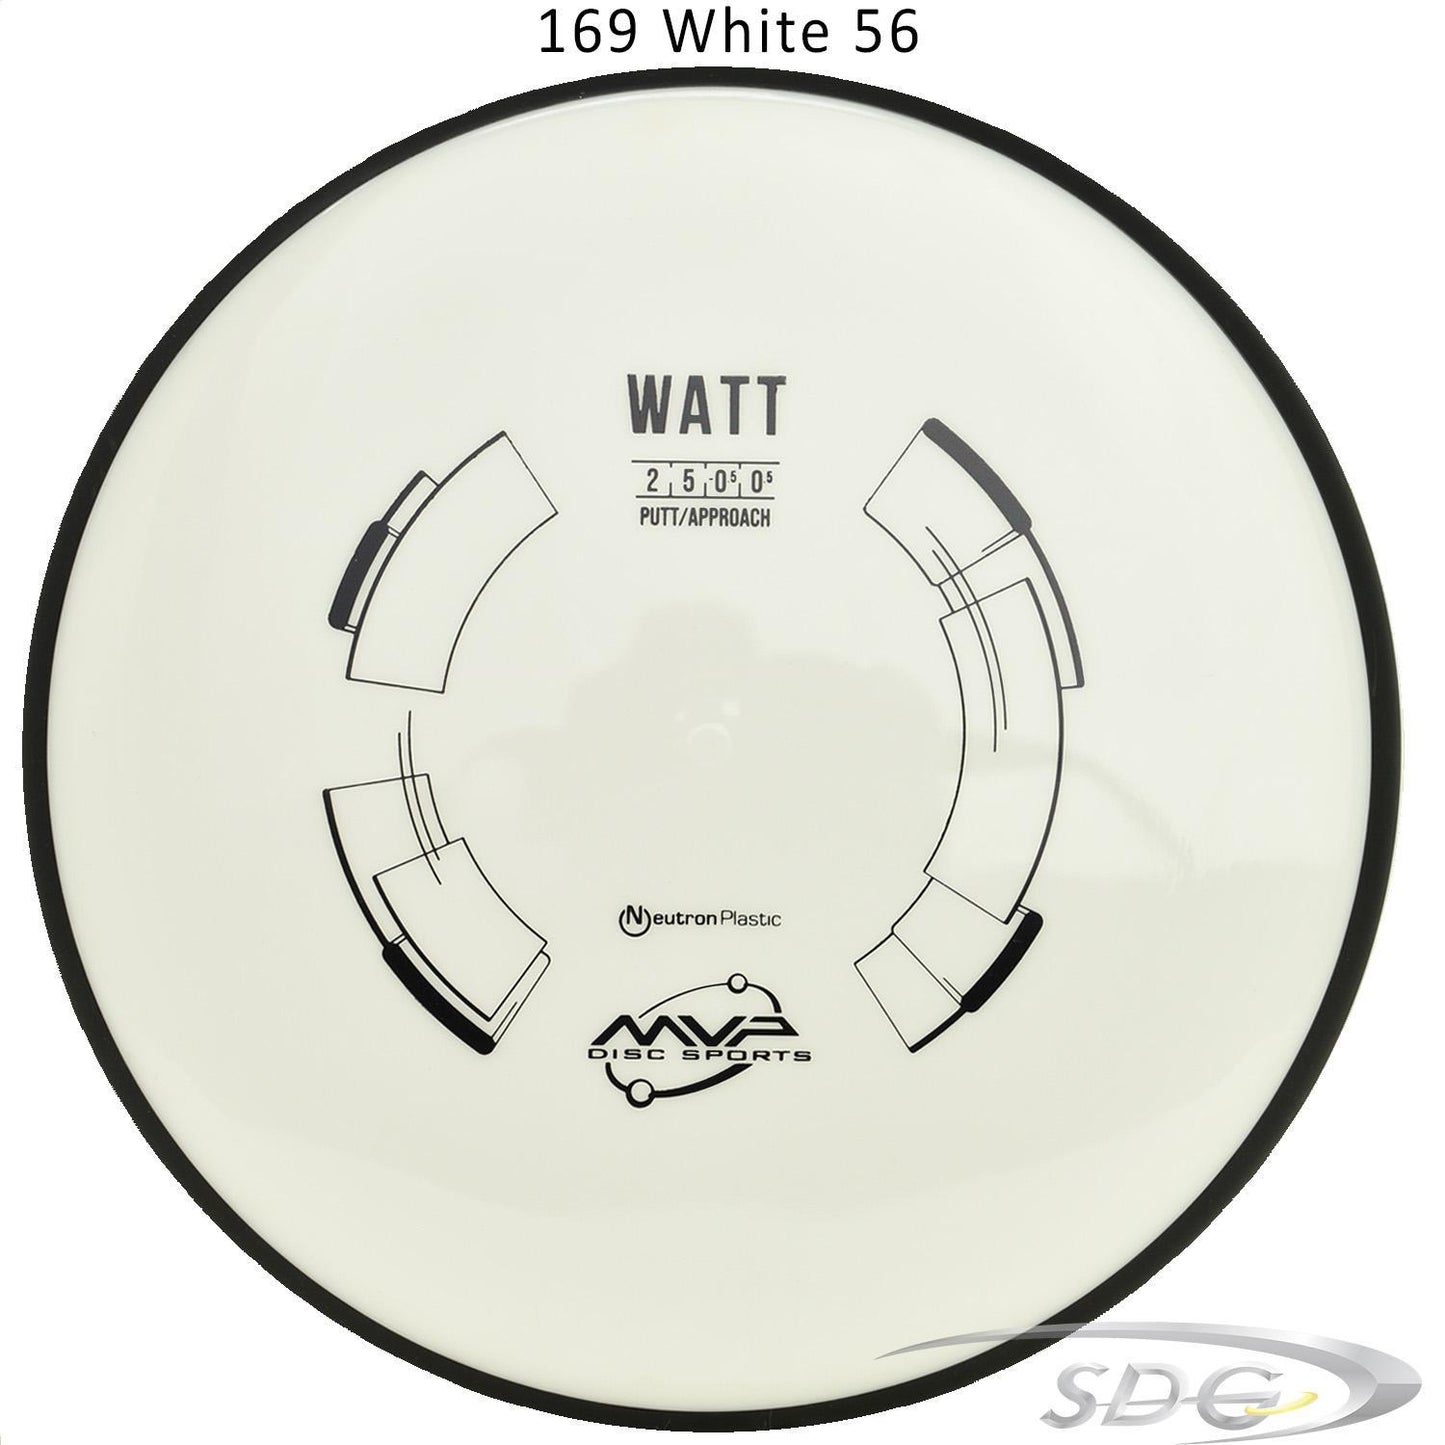 mvp-neutron-watt-disc-golf-putt-approach-169-165-weights 169 White 56 